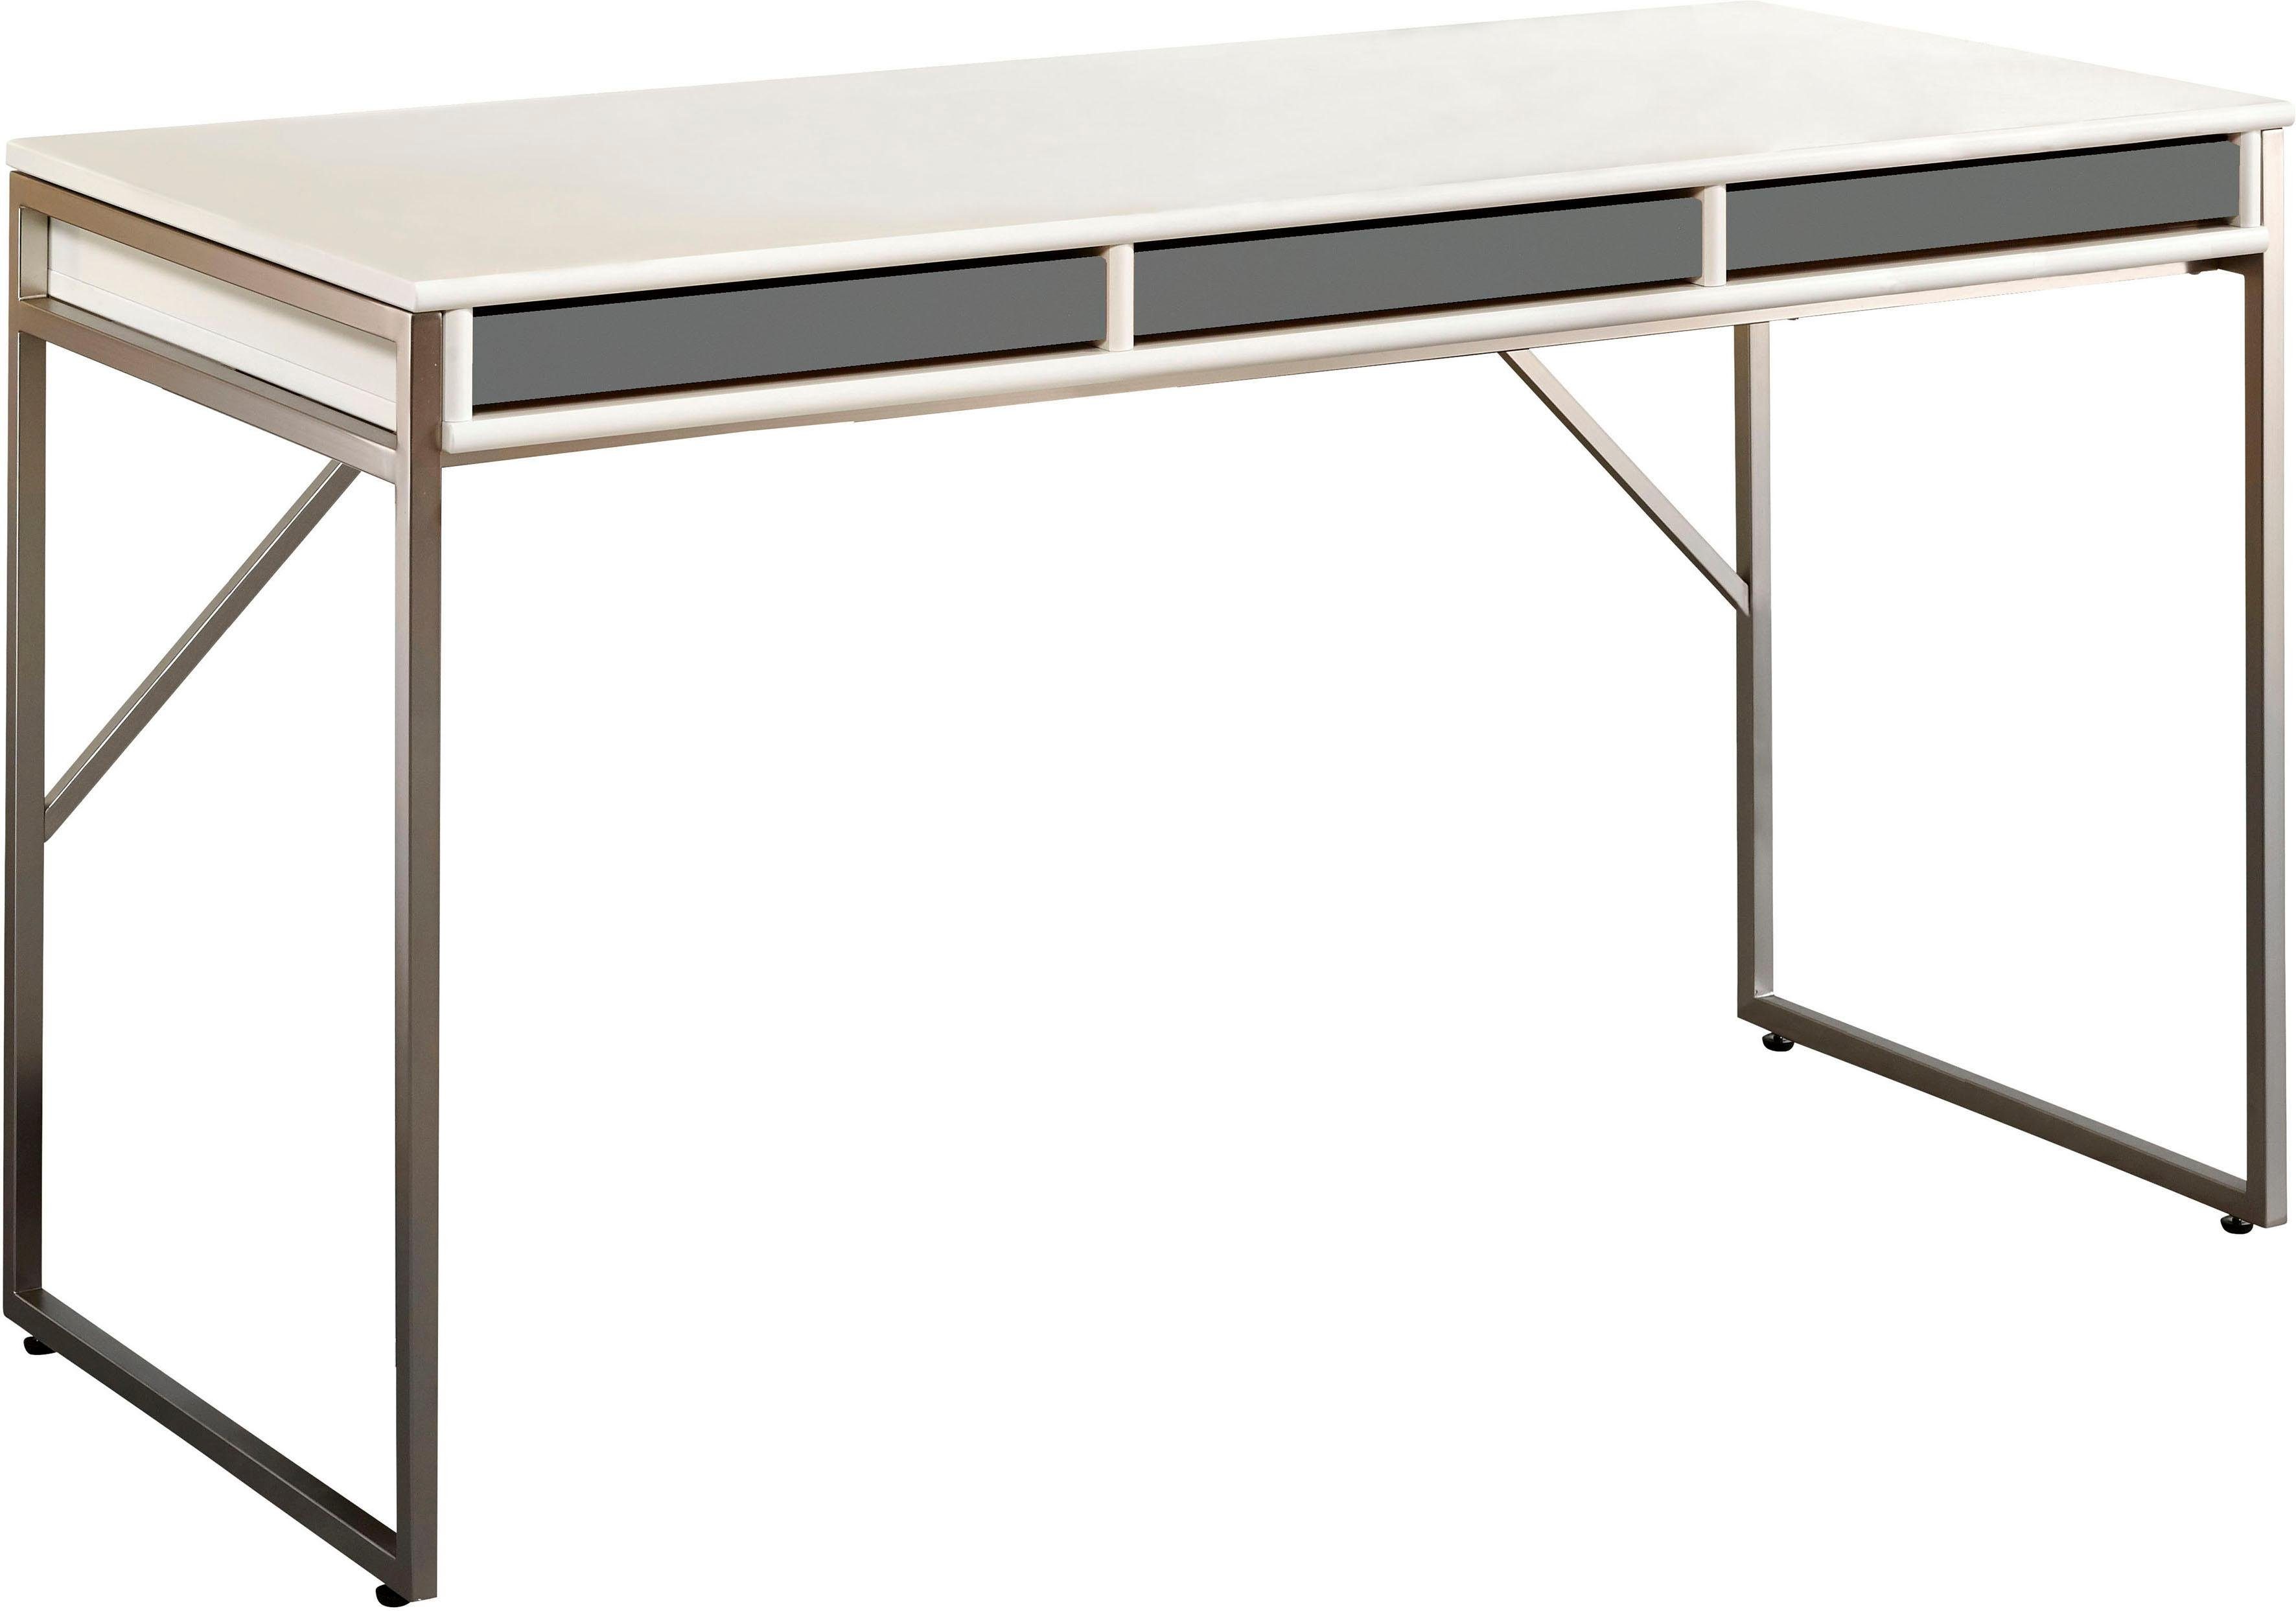 Hammel Furniture Schreibtisch Mistral Bürotisch, Designmöbel B: Arbeitstisch, Gestell, Tisch, mit 137,4 cm, Computertisch, graphit